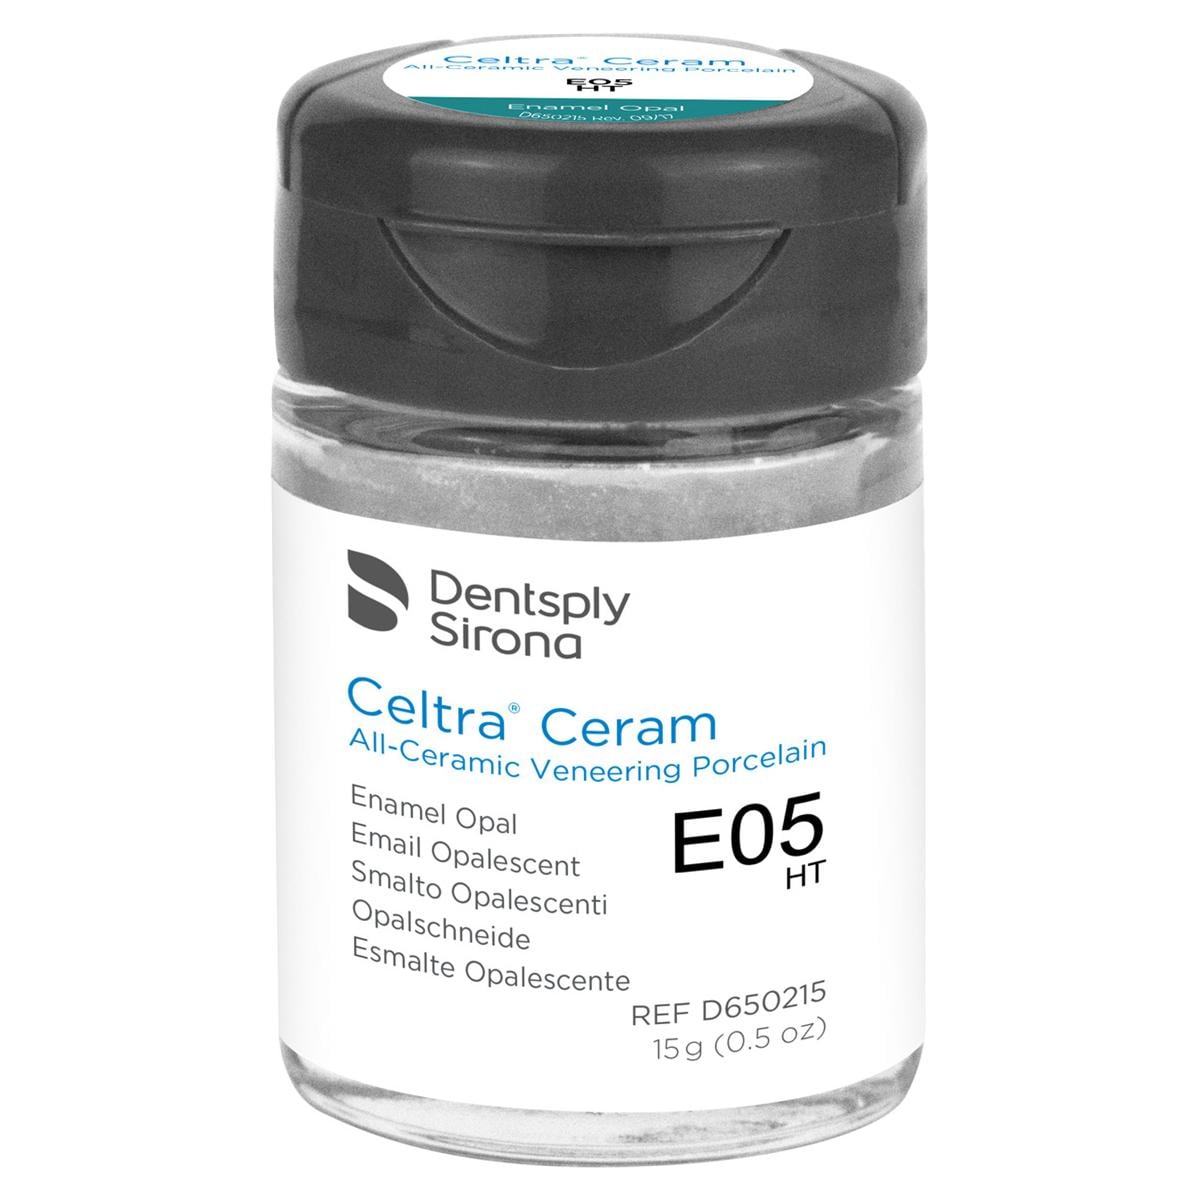 CELTRA® Ceram Enamel Opal - EO5 HT, Packung 15 g